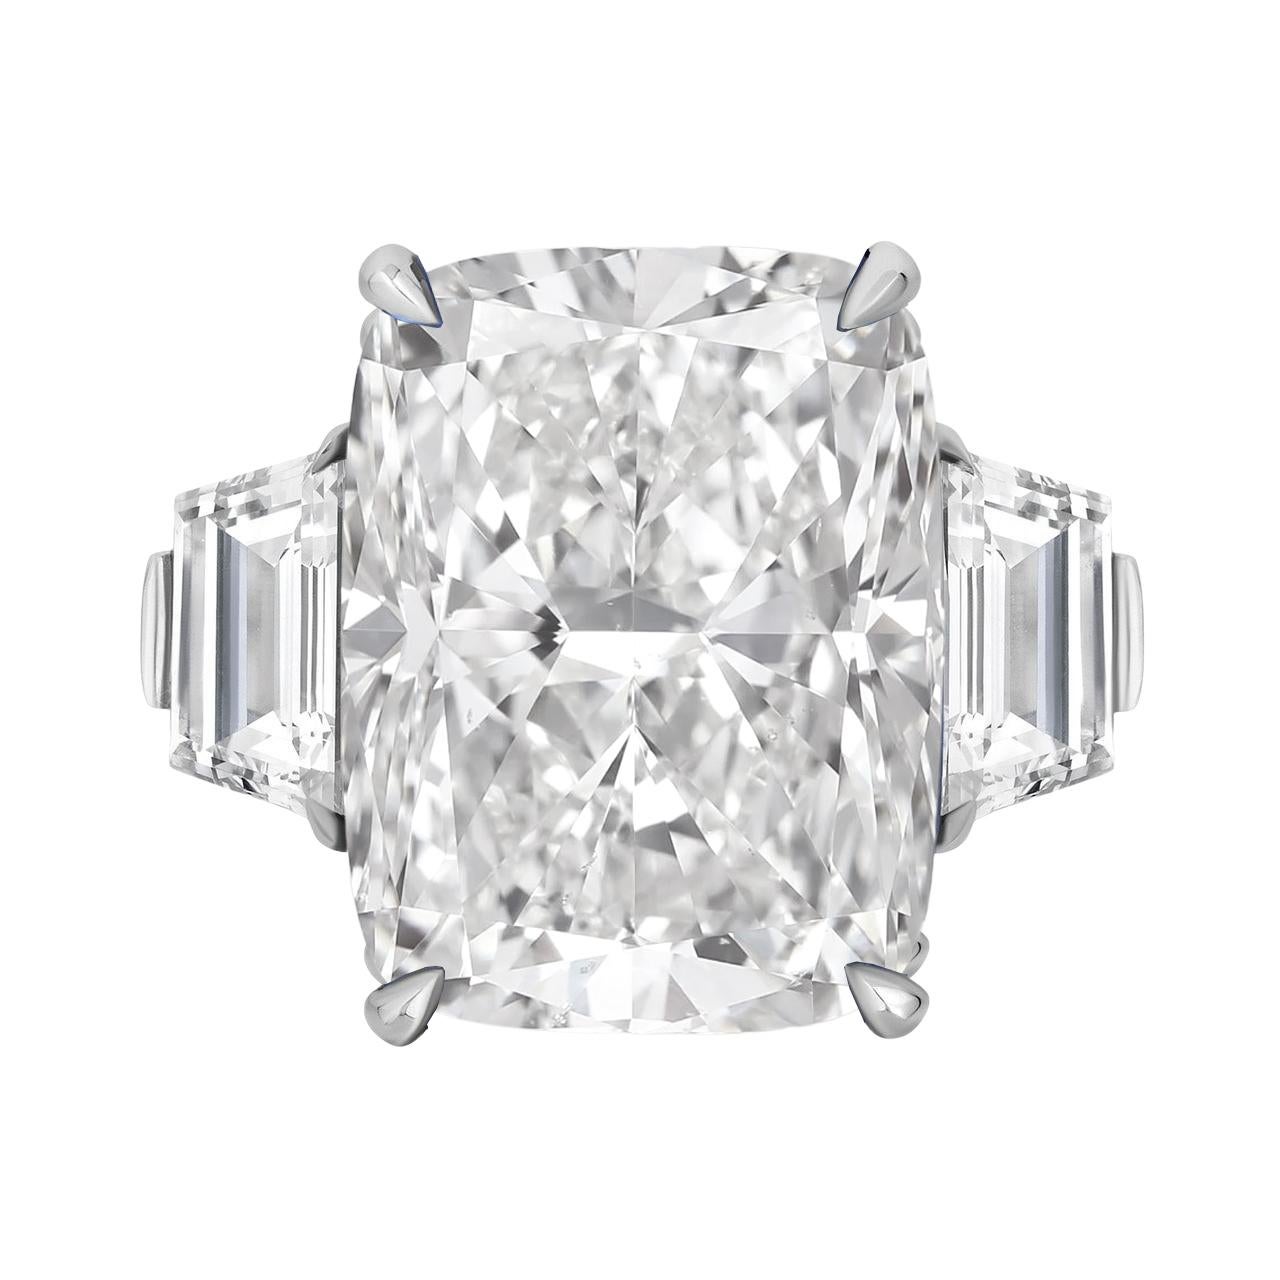 Découvrez le summum de l'artisanat diamantaire avec cette exceptionnelle bague à diamant taille coussin de 10 carats, qui témoigne d'une élégance intemporelle. Certifiée par le Gemological Institute of America (GIA), cette pièce remarquable affiche